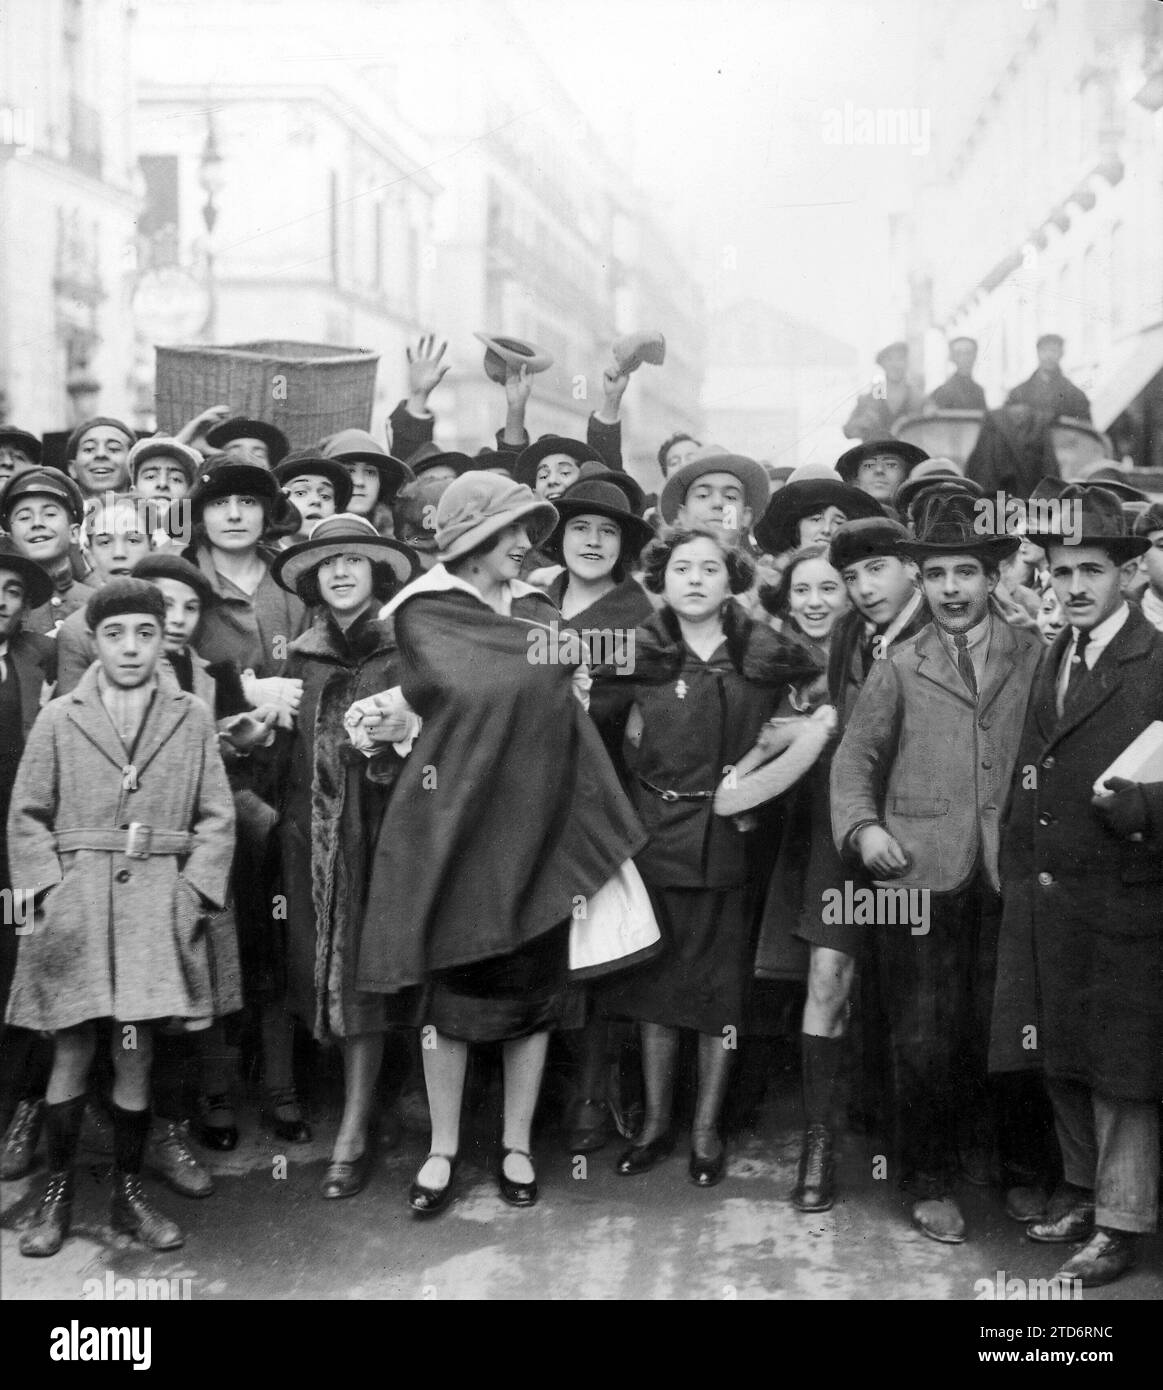 11/16/1922. Madrid. Dimostrazioni studentesche. Studenti del conservatorio che manifestano in Arenal Street. Crediti: Album / Archivo ABC / Julio Duque Foto Stock